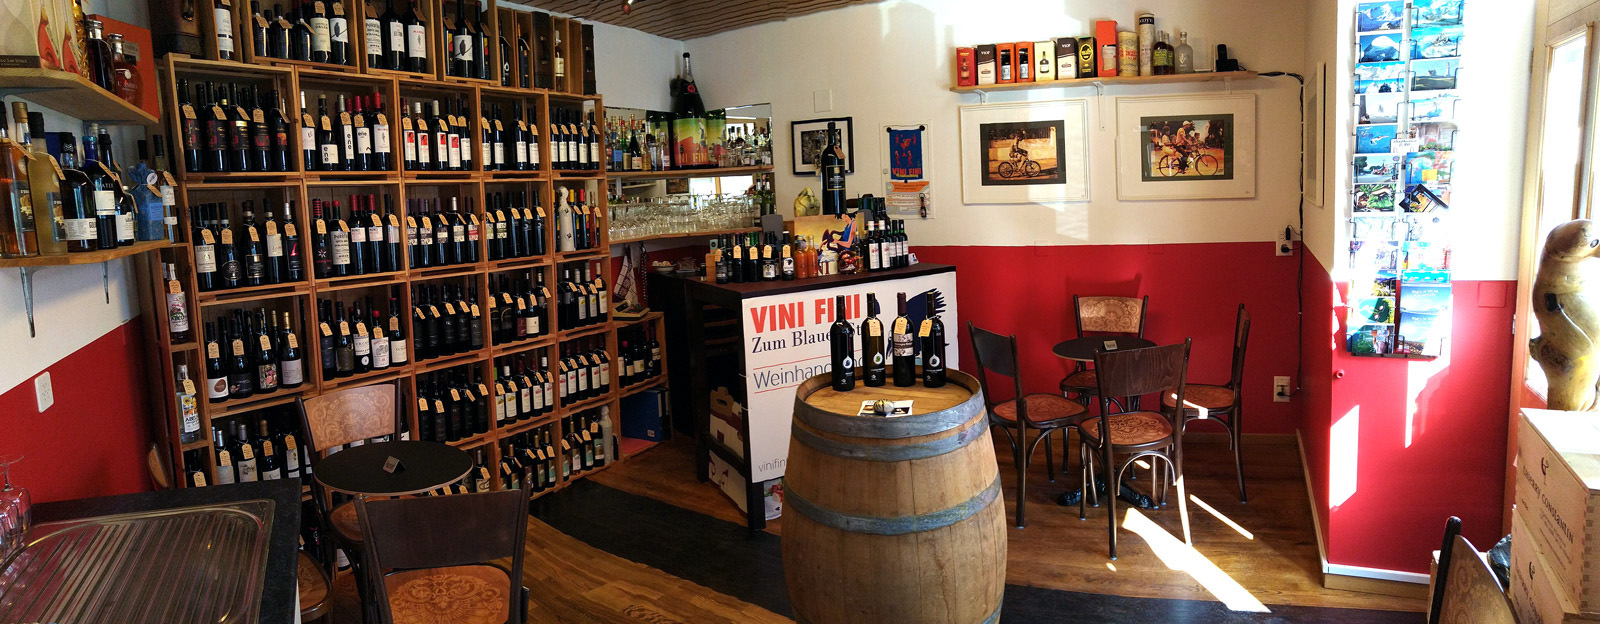 Vini Fini Weinladen mit Bar 